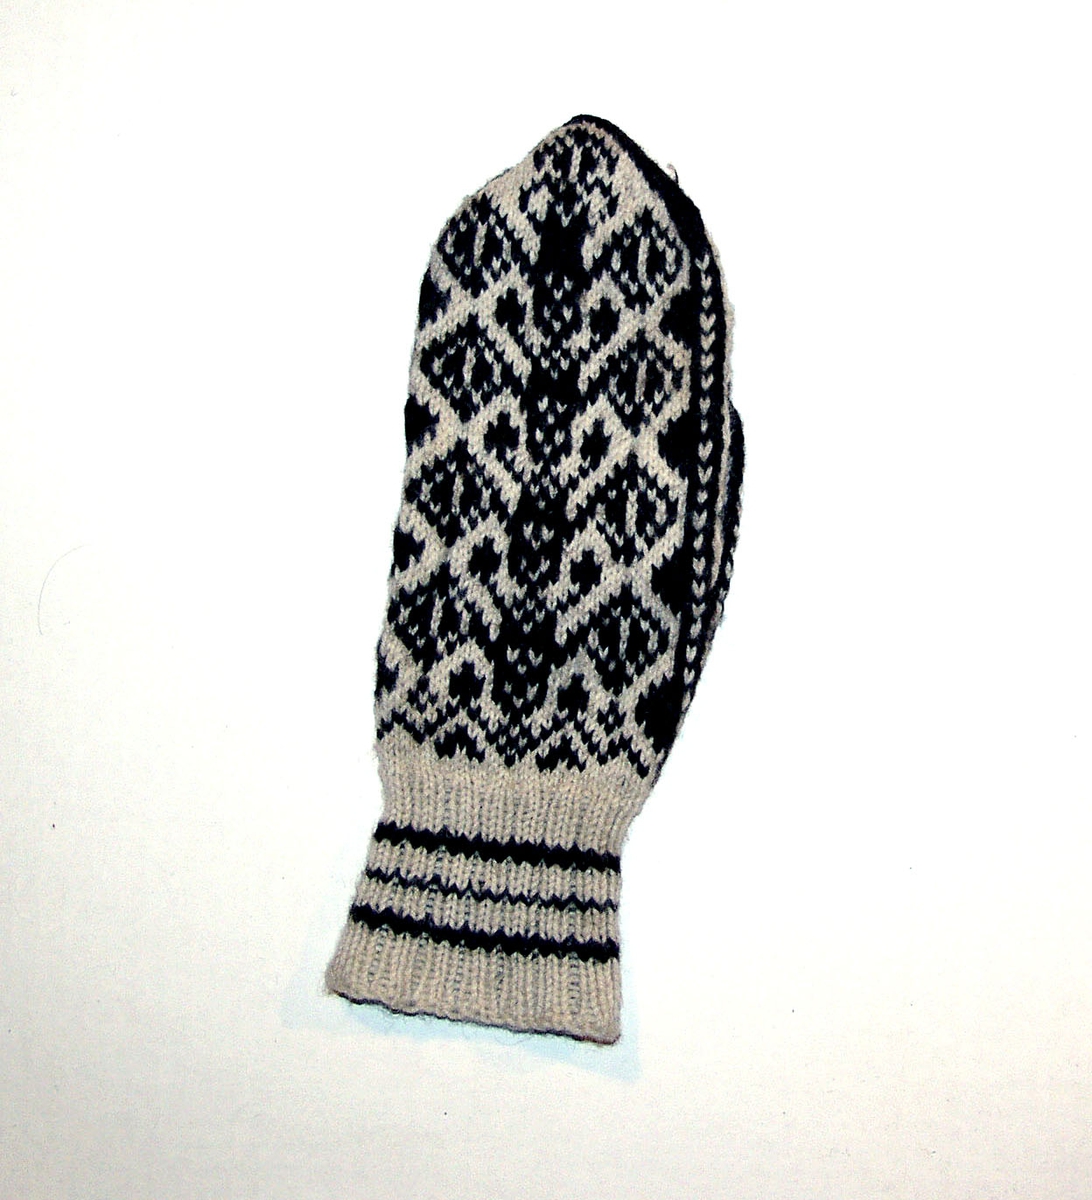 En ullvott, strikket, med mønster i hvitt og mørkt brunt.
